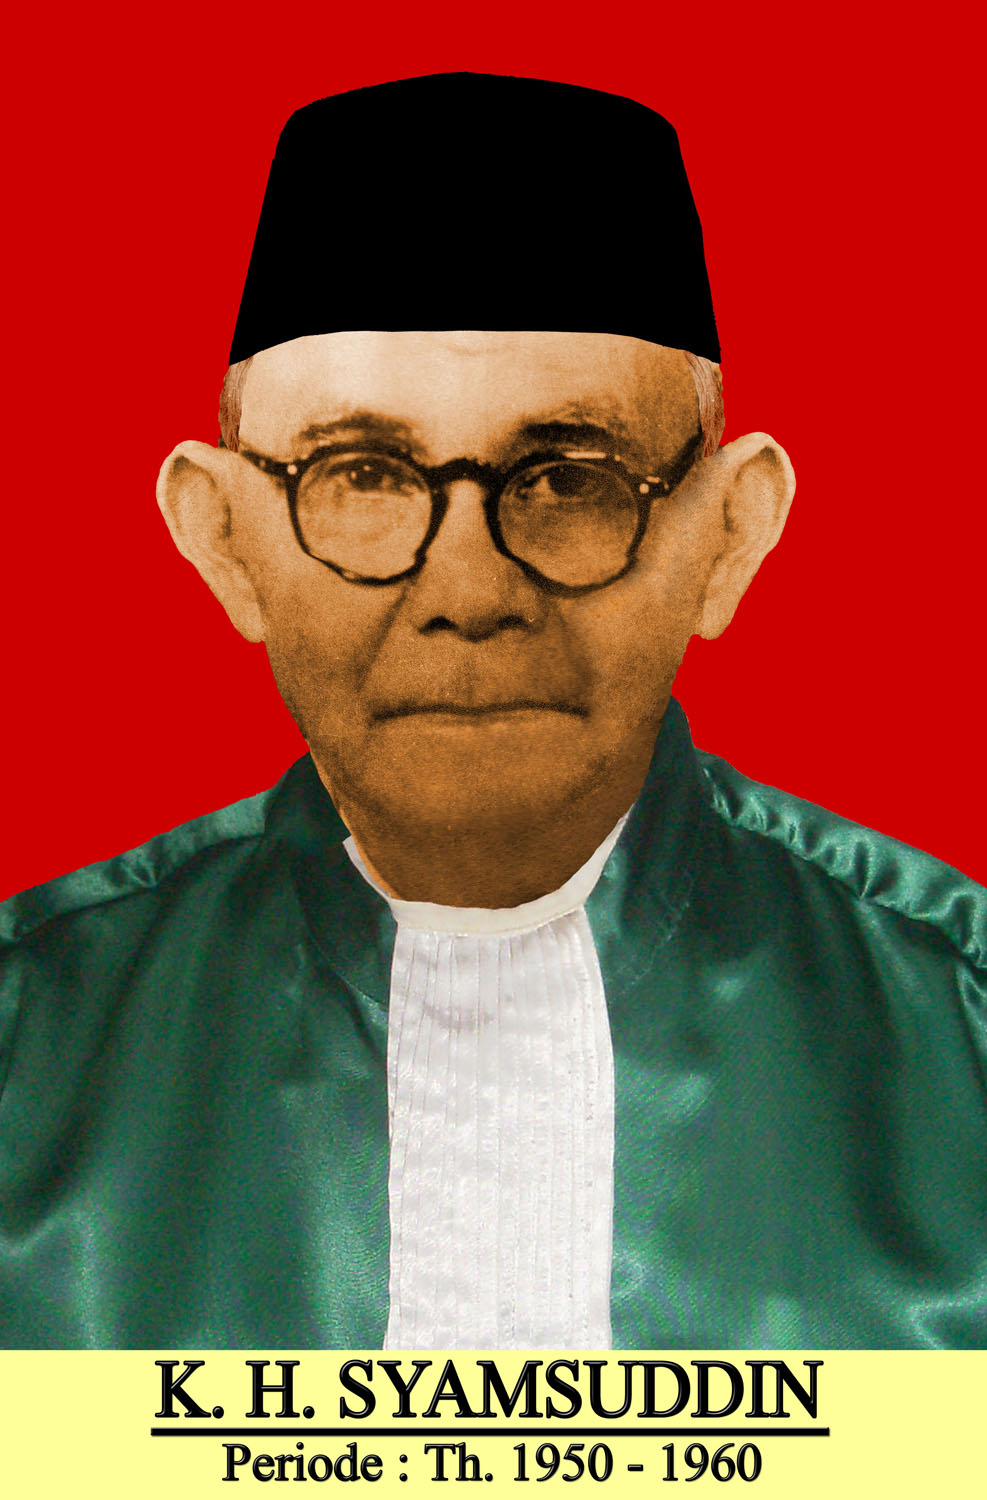 2. K. H. Syamsuddin